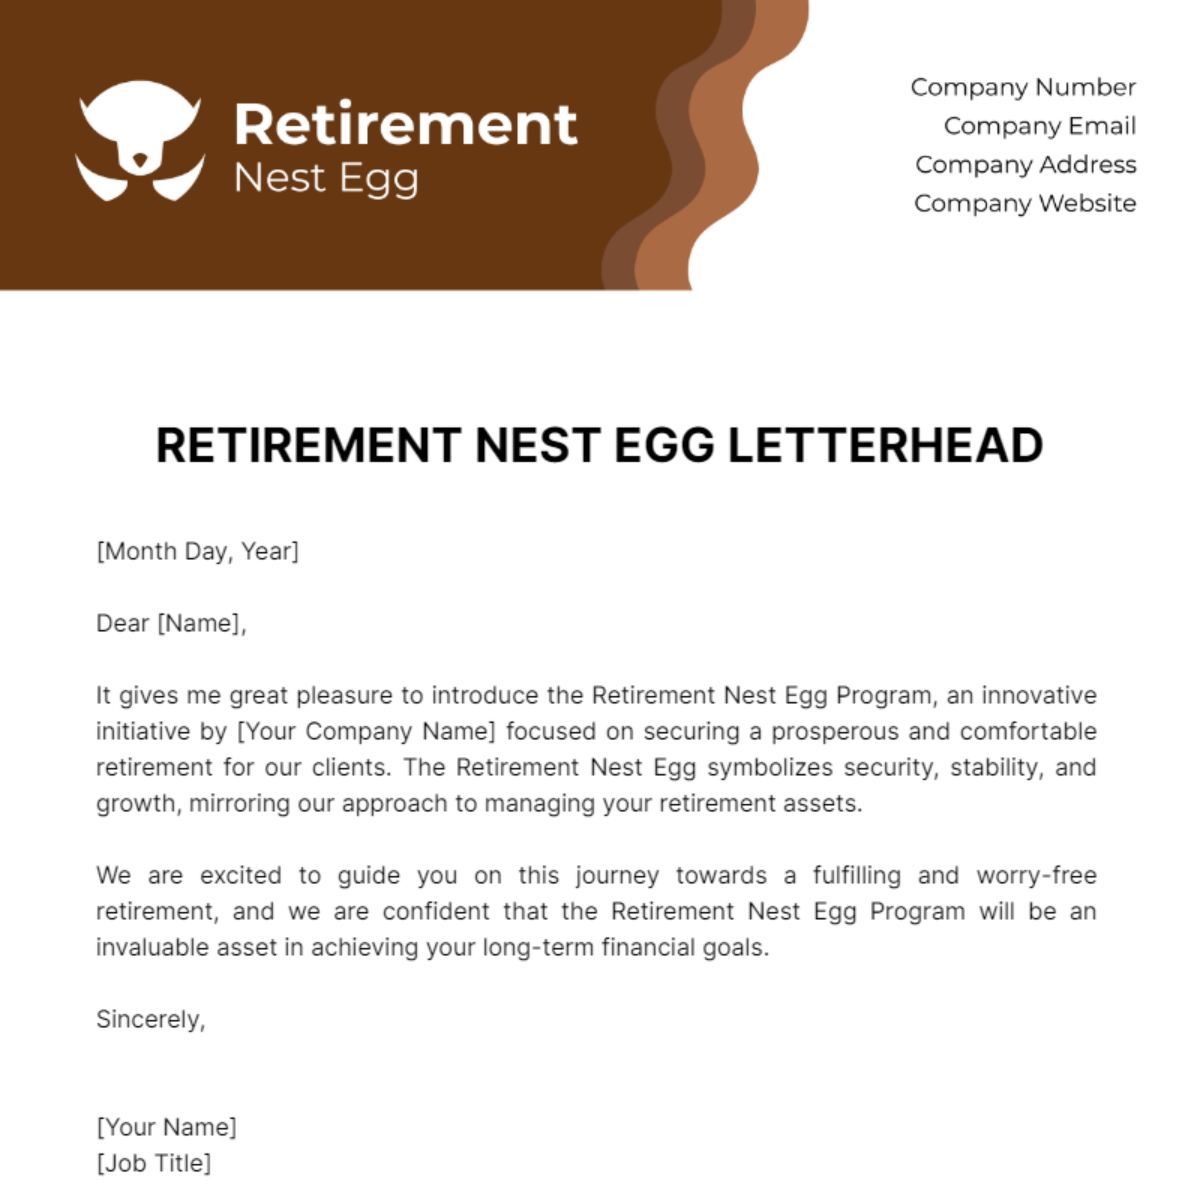 Retirement Nest Egg Letterhead Template